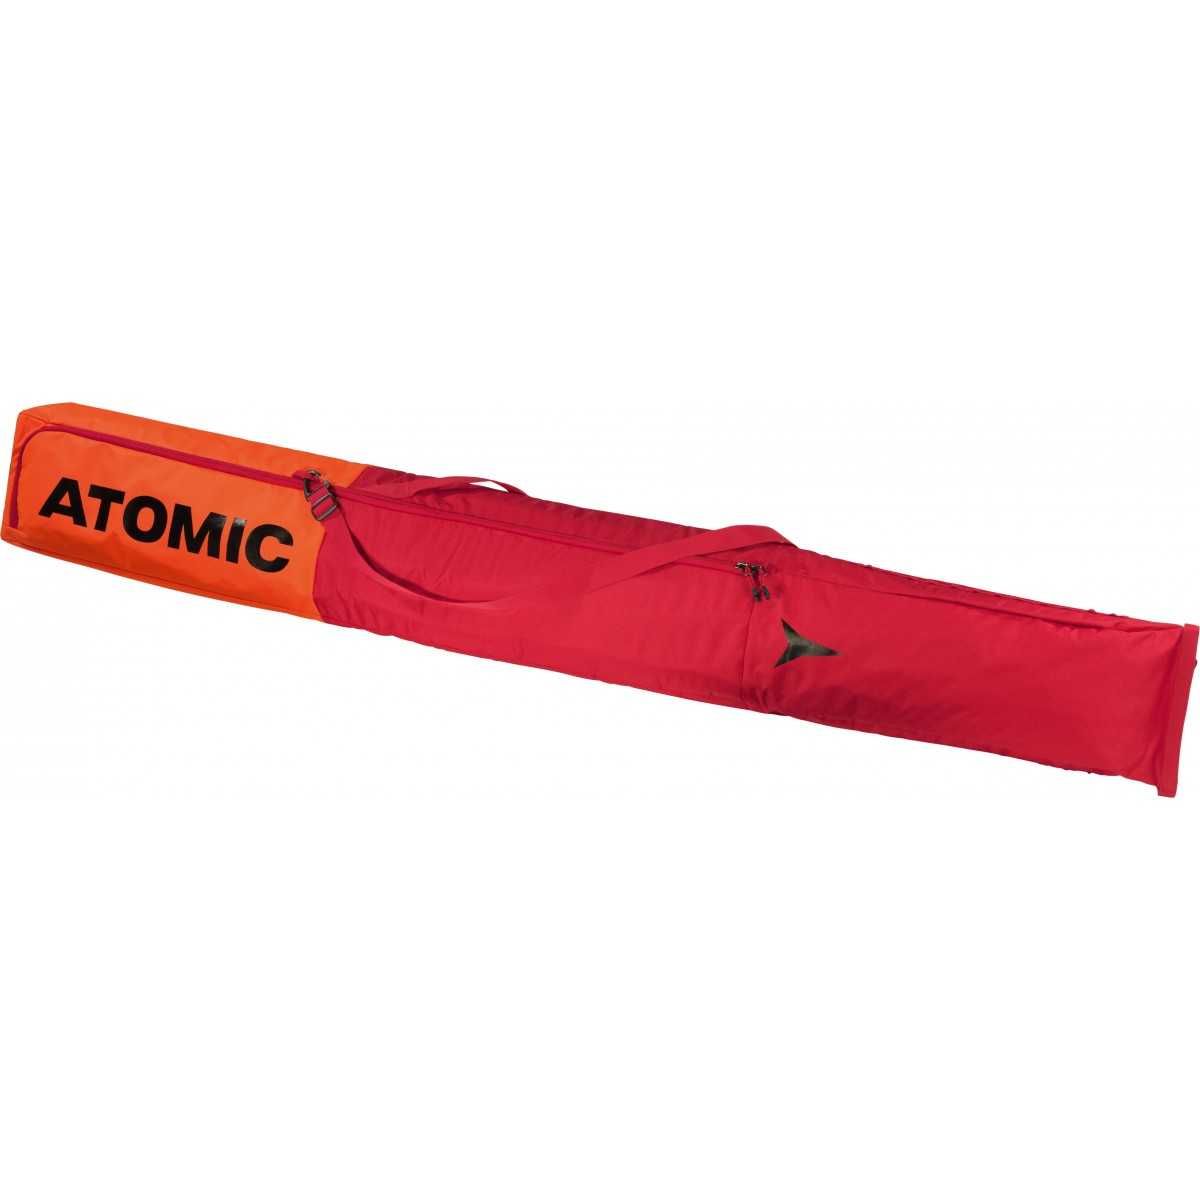 ATOMIC SKI BAG 2 paires rouge 205cm 